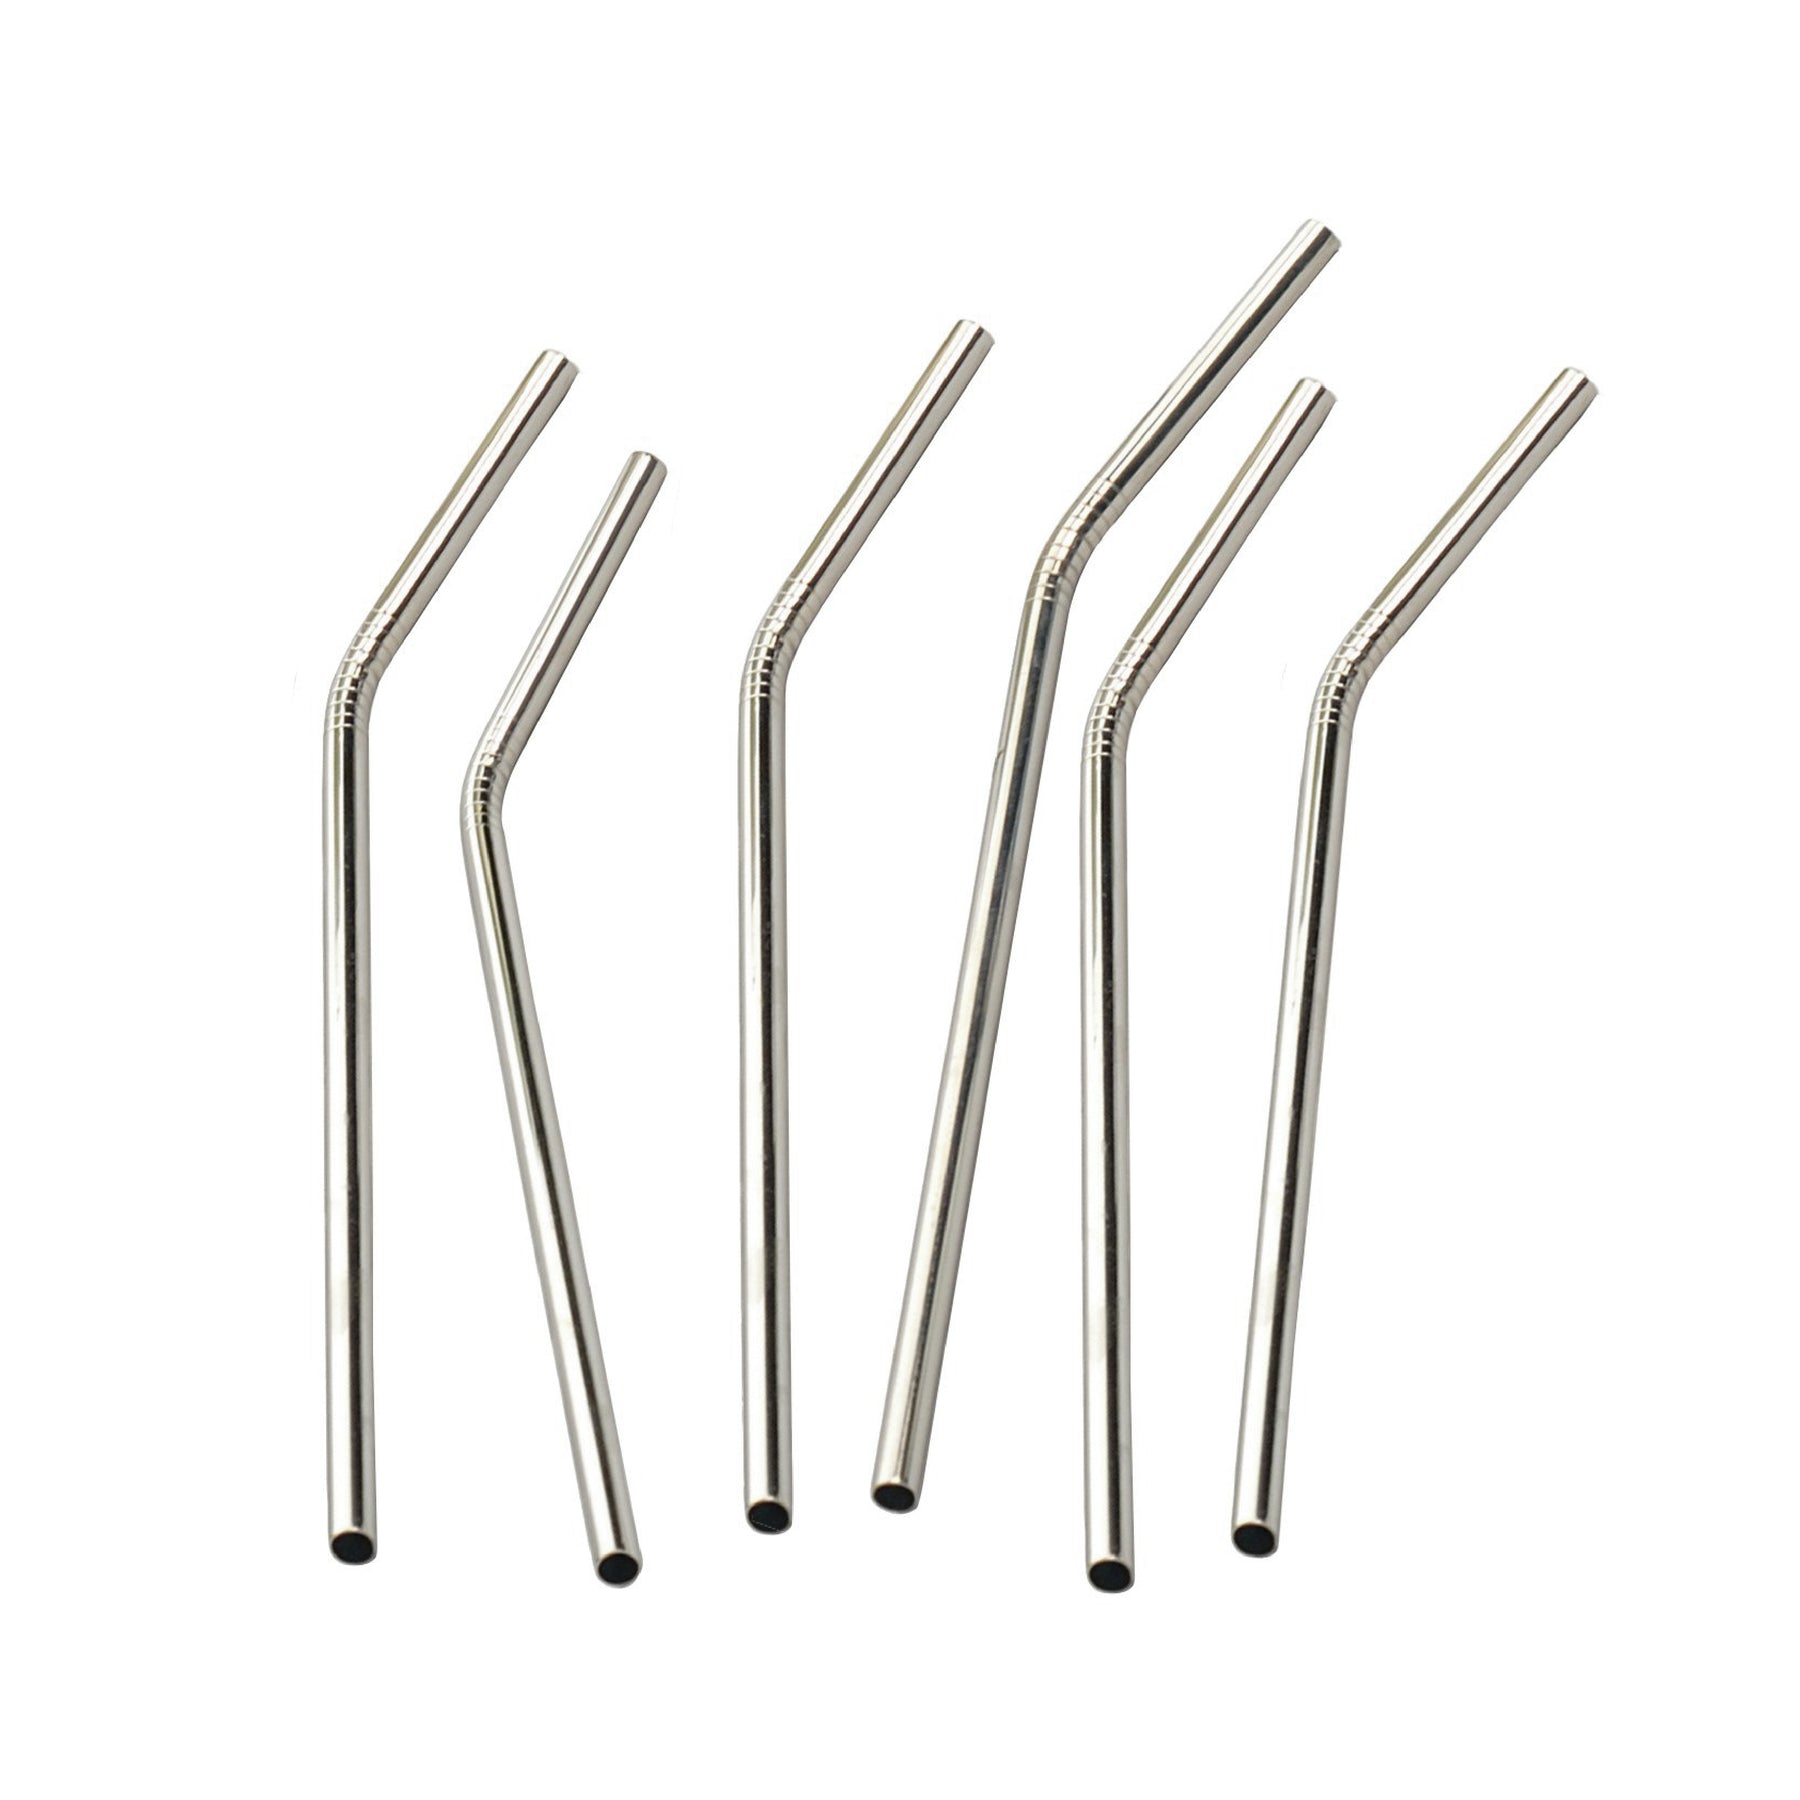 Stainless Steel Straws, Eco Friendly Straws